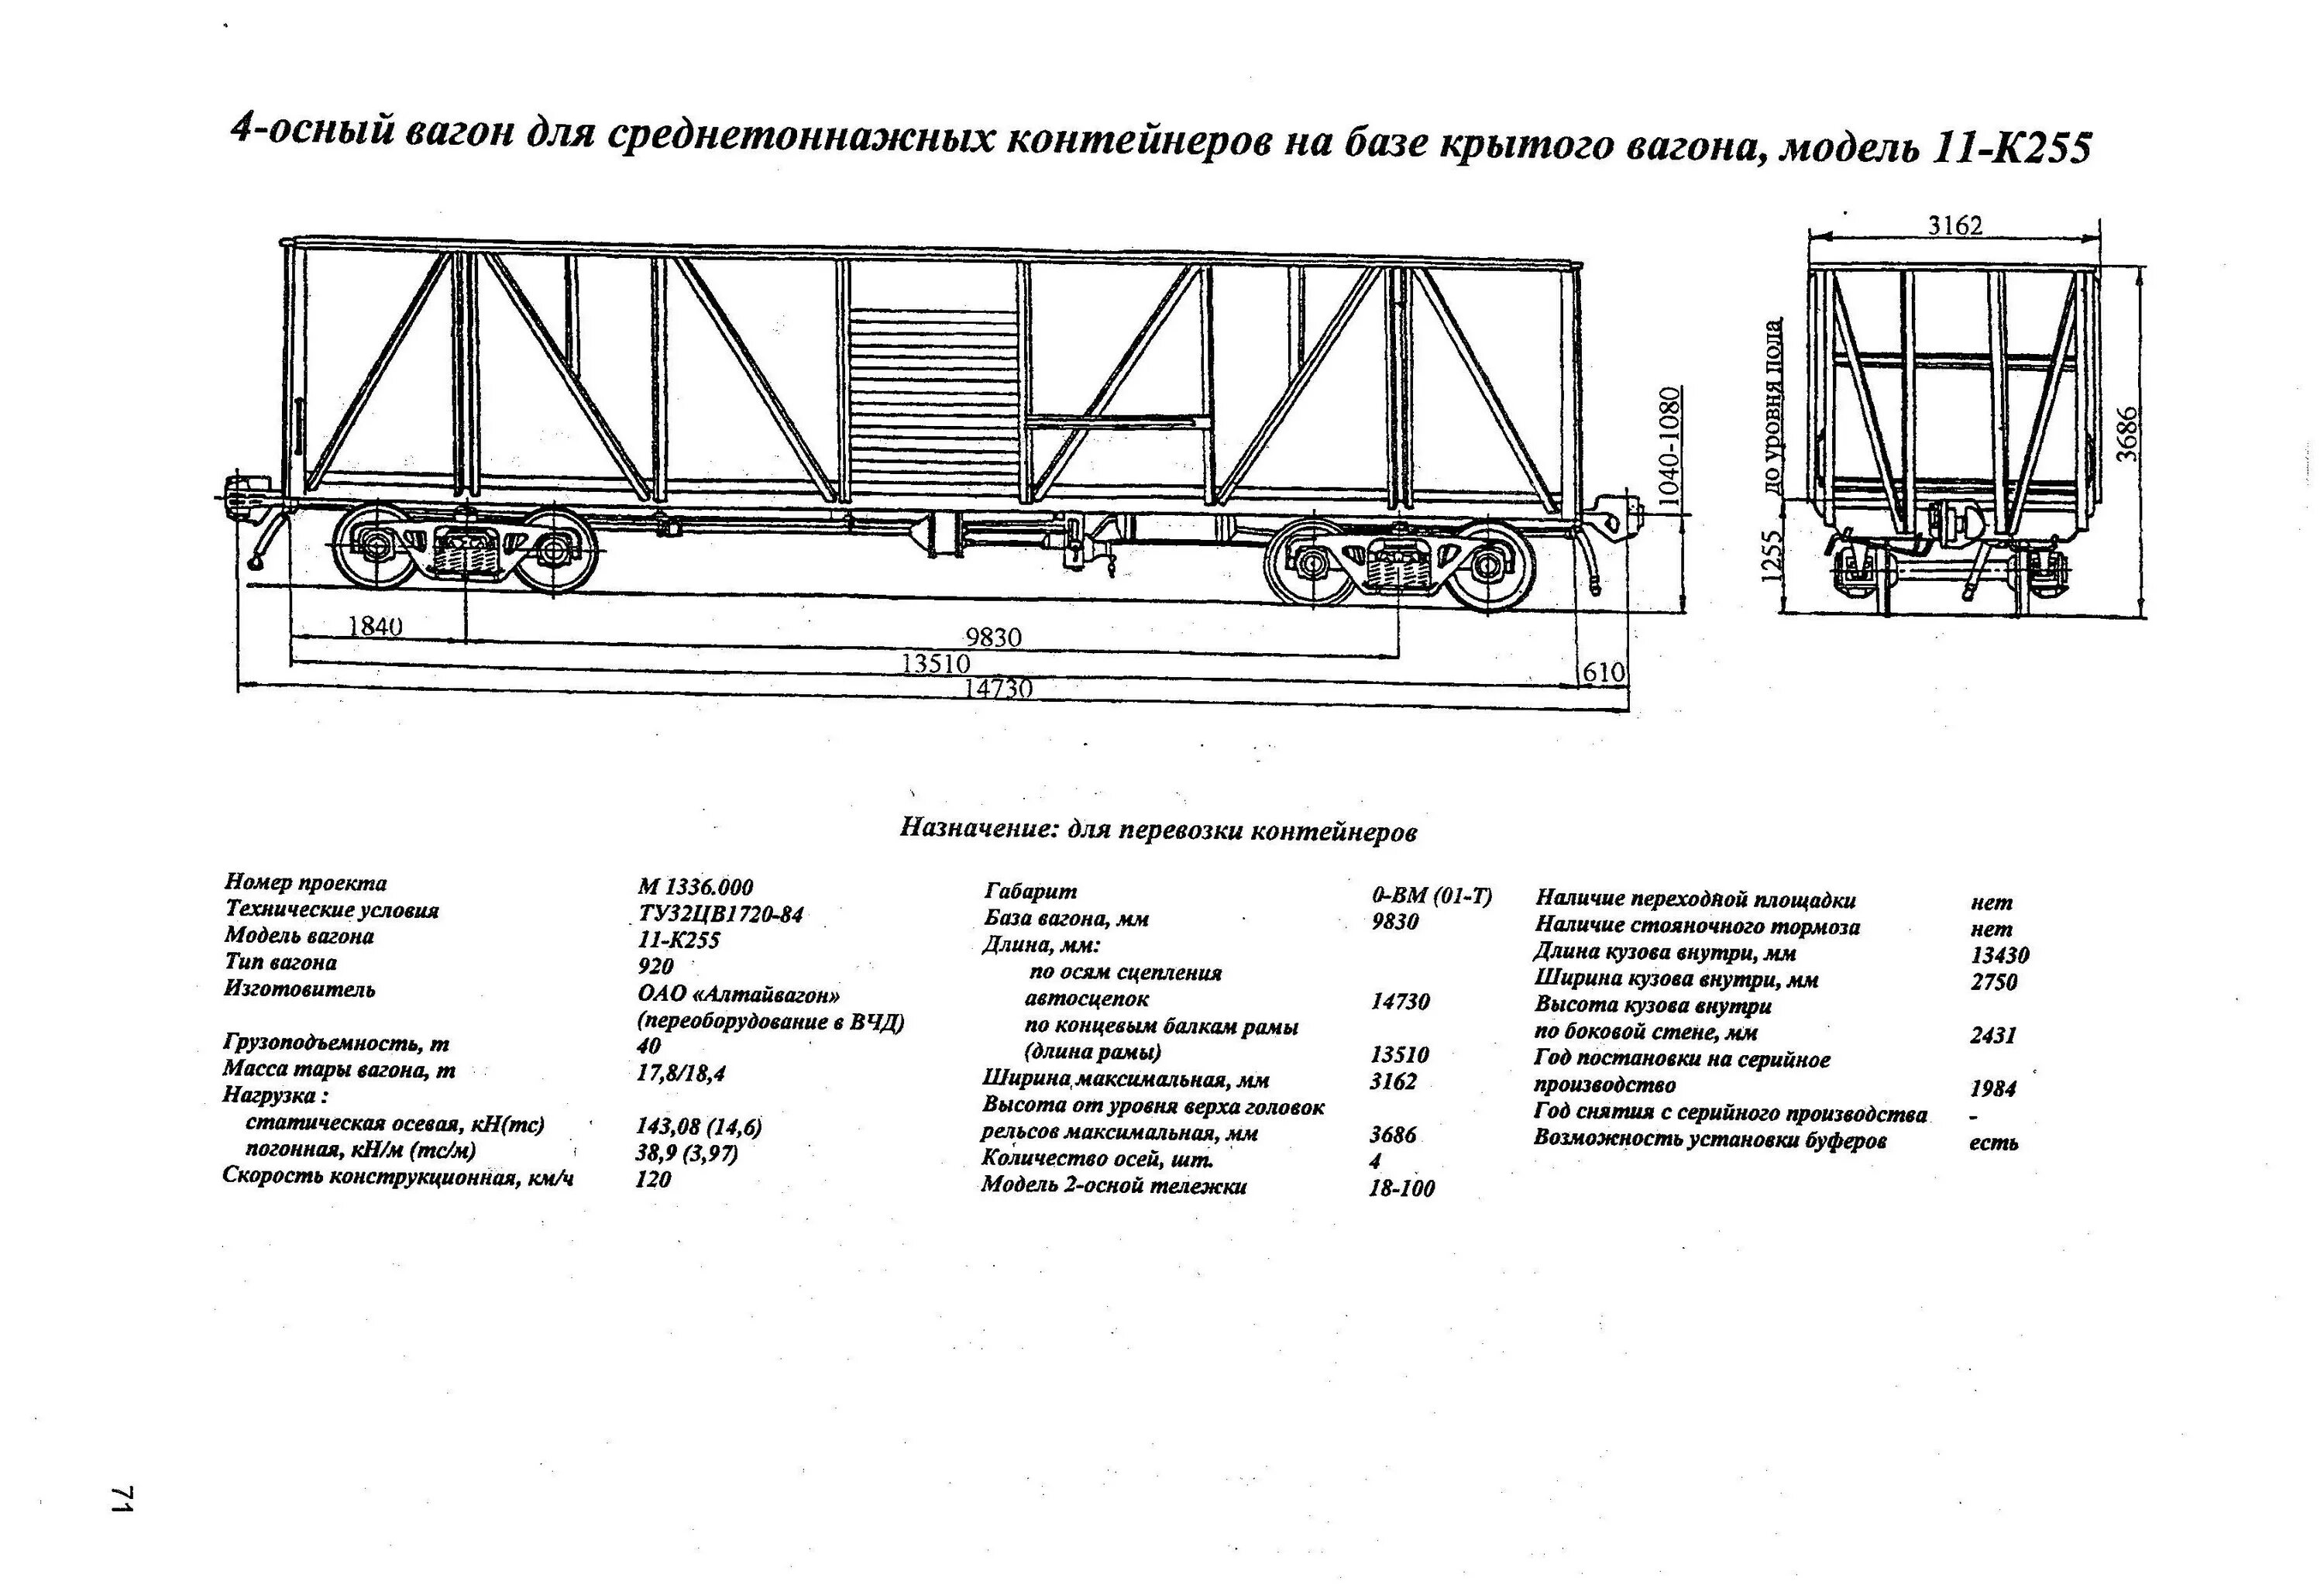 4-Осный вагон для среднетоннажных контейнеров. Полувагон для среднетоннажных контейнеров. Грузоподъемность крытого вагона 4 осного. Какой длины железнодорожный вагон